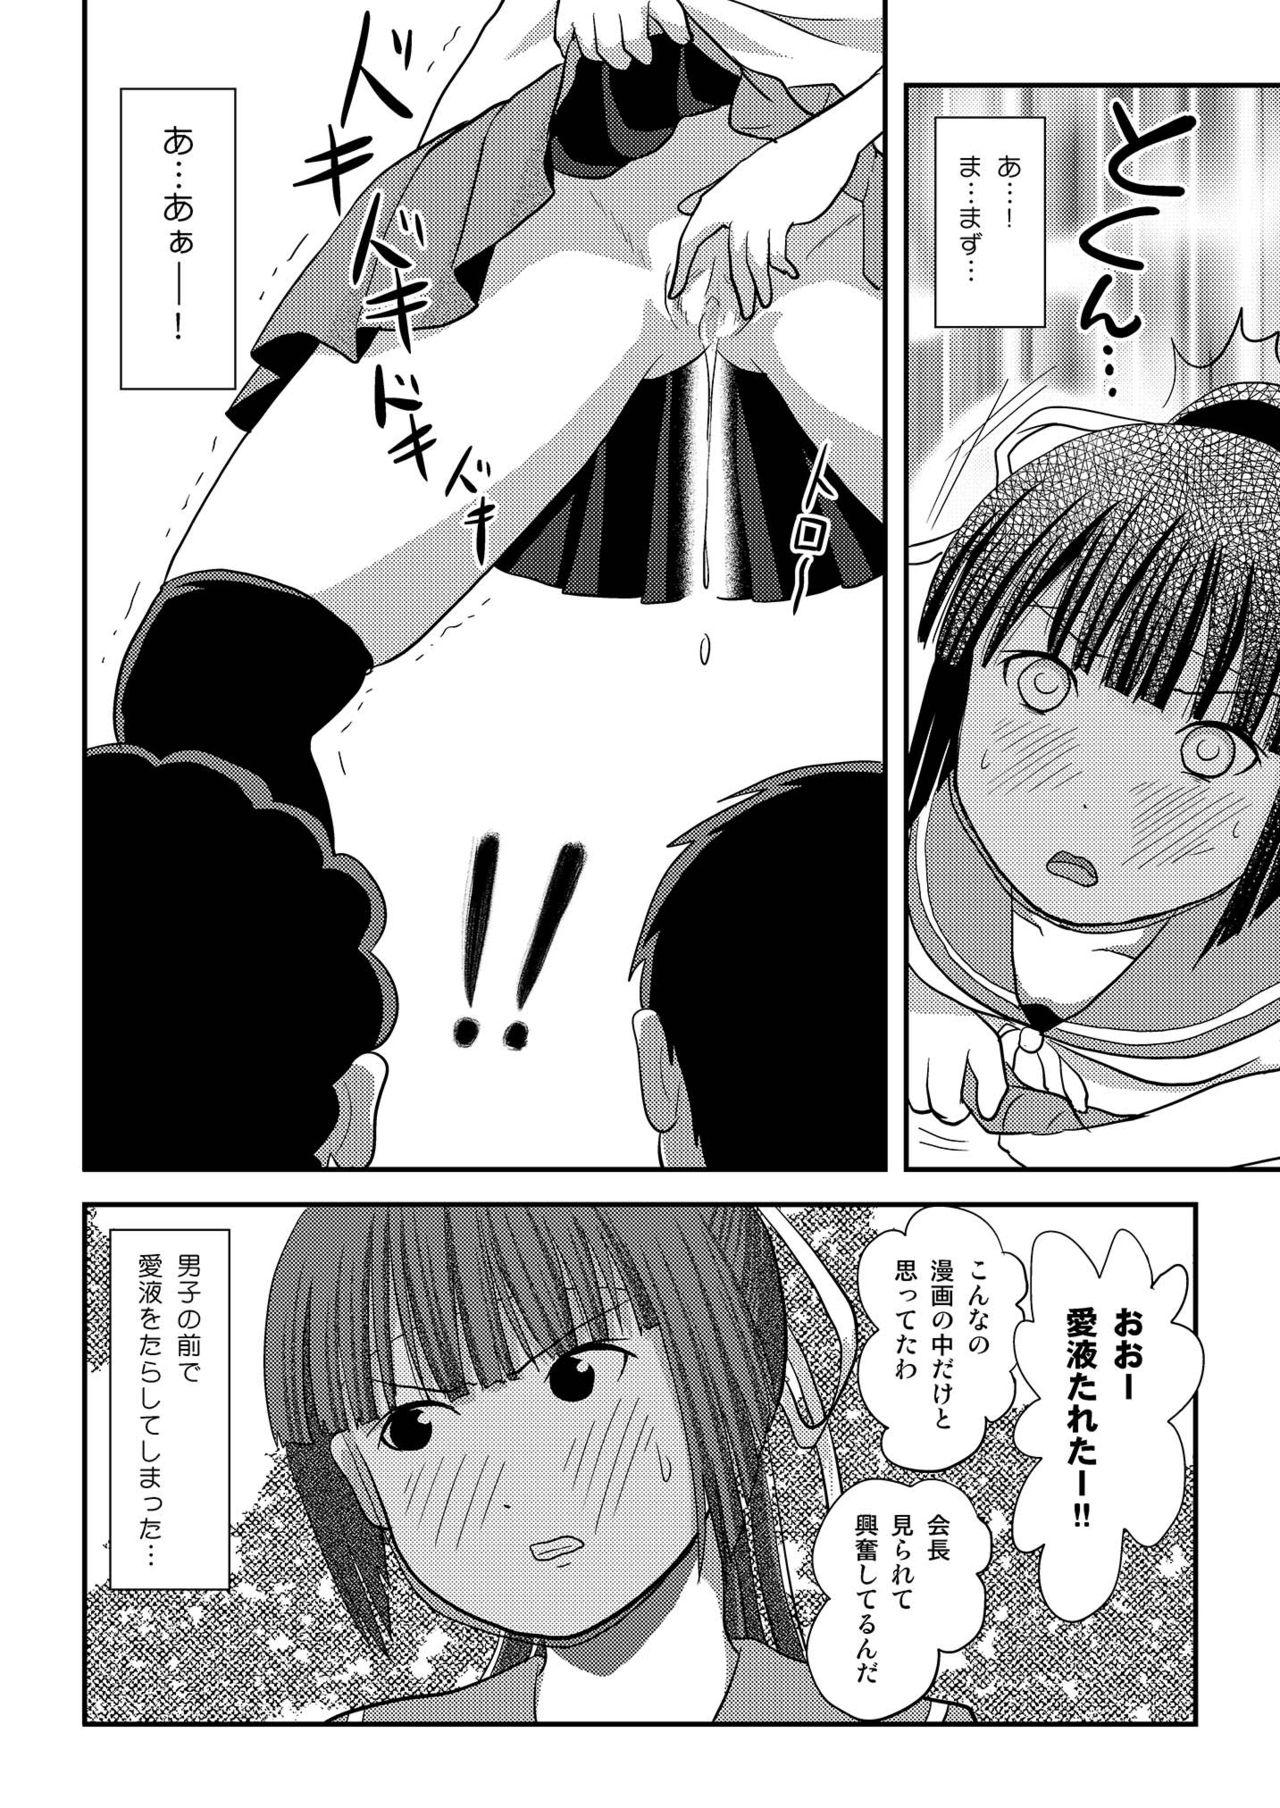 Plug Sakura Kotaka no Roshutsubiyori 7 - Original Chinese - Page 8